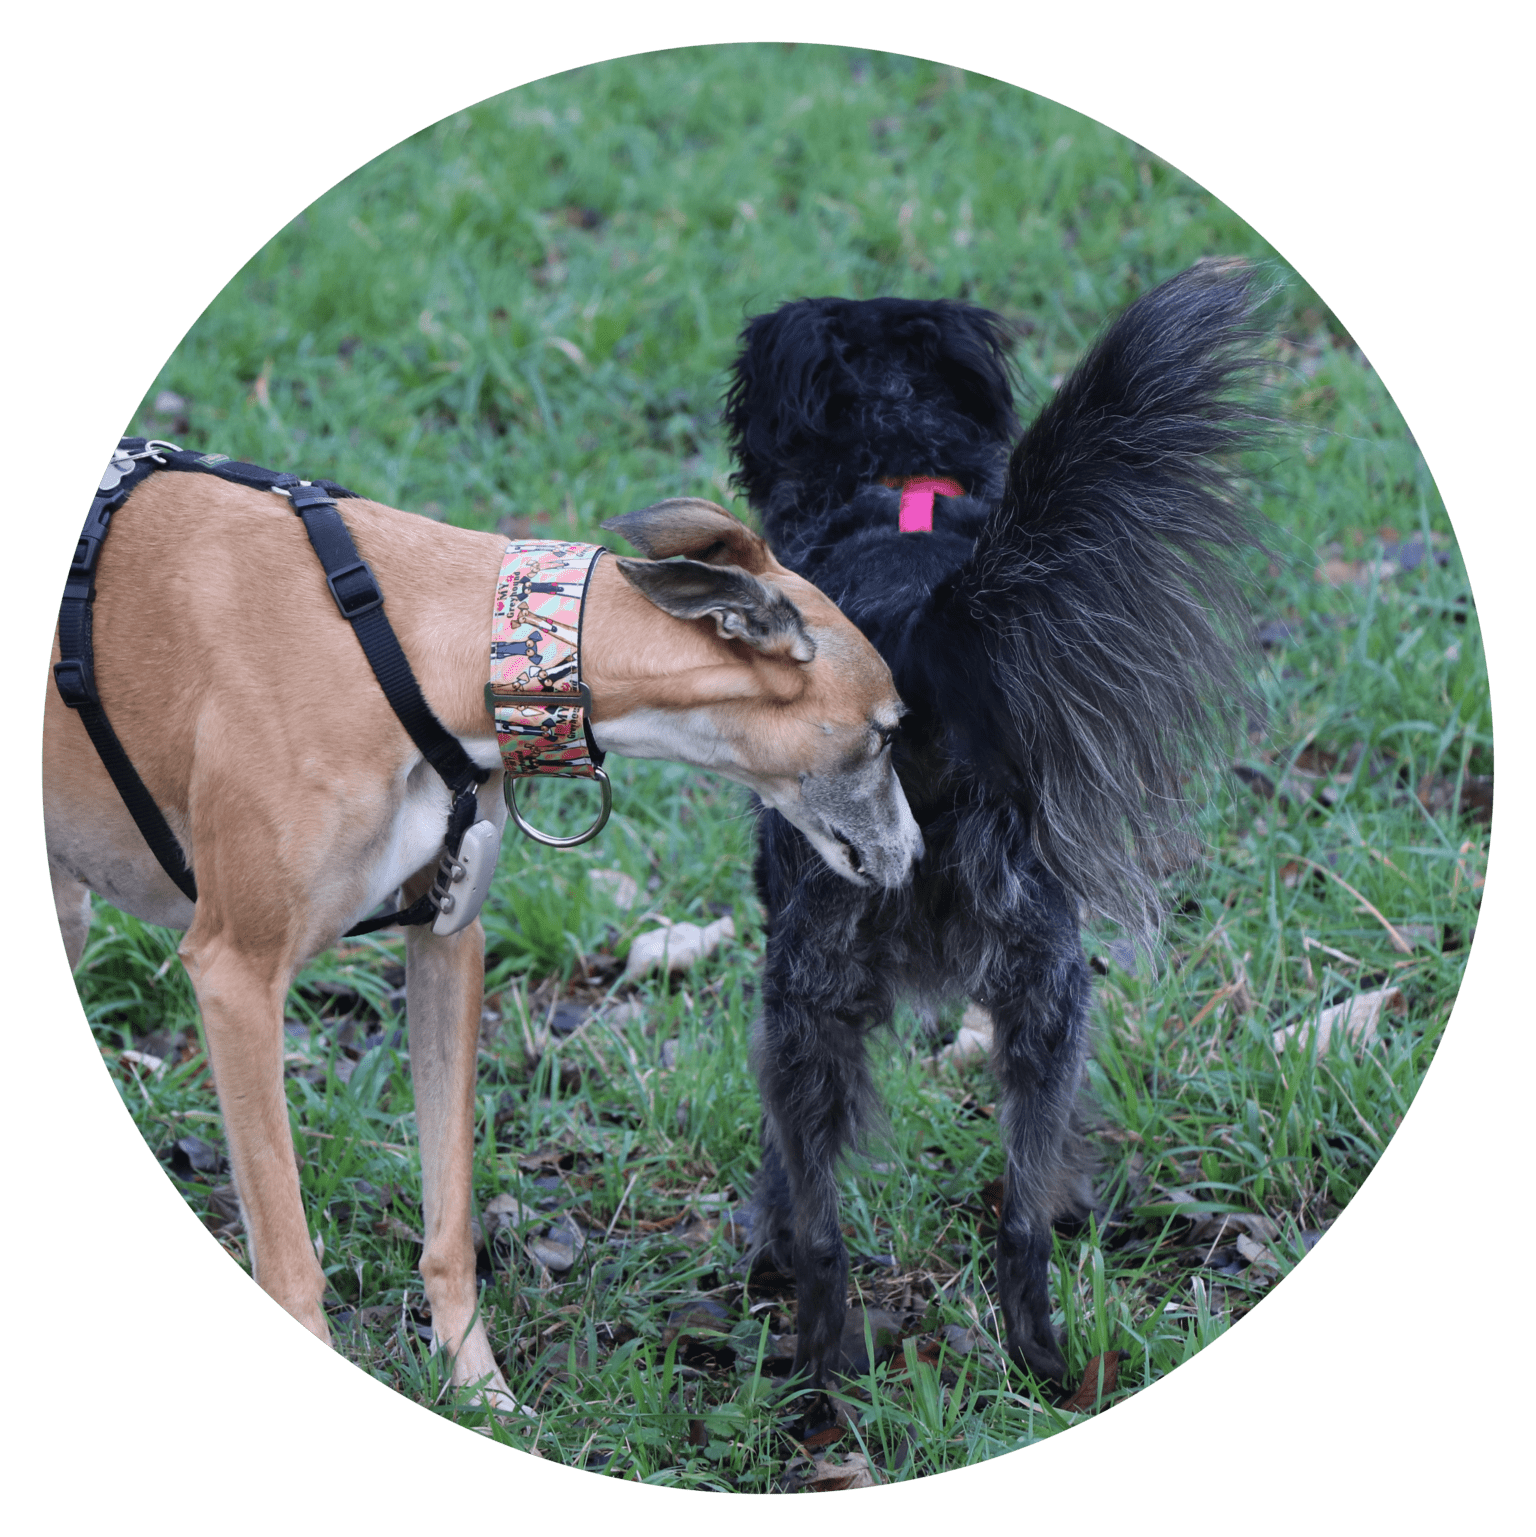 Il s’agit de chiens qui sont habitués à se côtoyer, à partager des activités de chiens ensemble. Leurs besoins sociaux sont ainsi comblés, mais également leurs besoins exploratoires, de dépenses physiques et mentales.